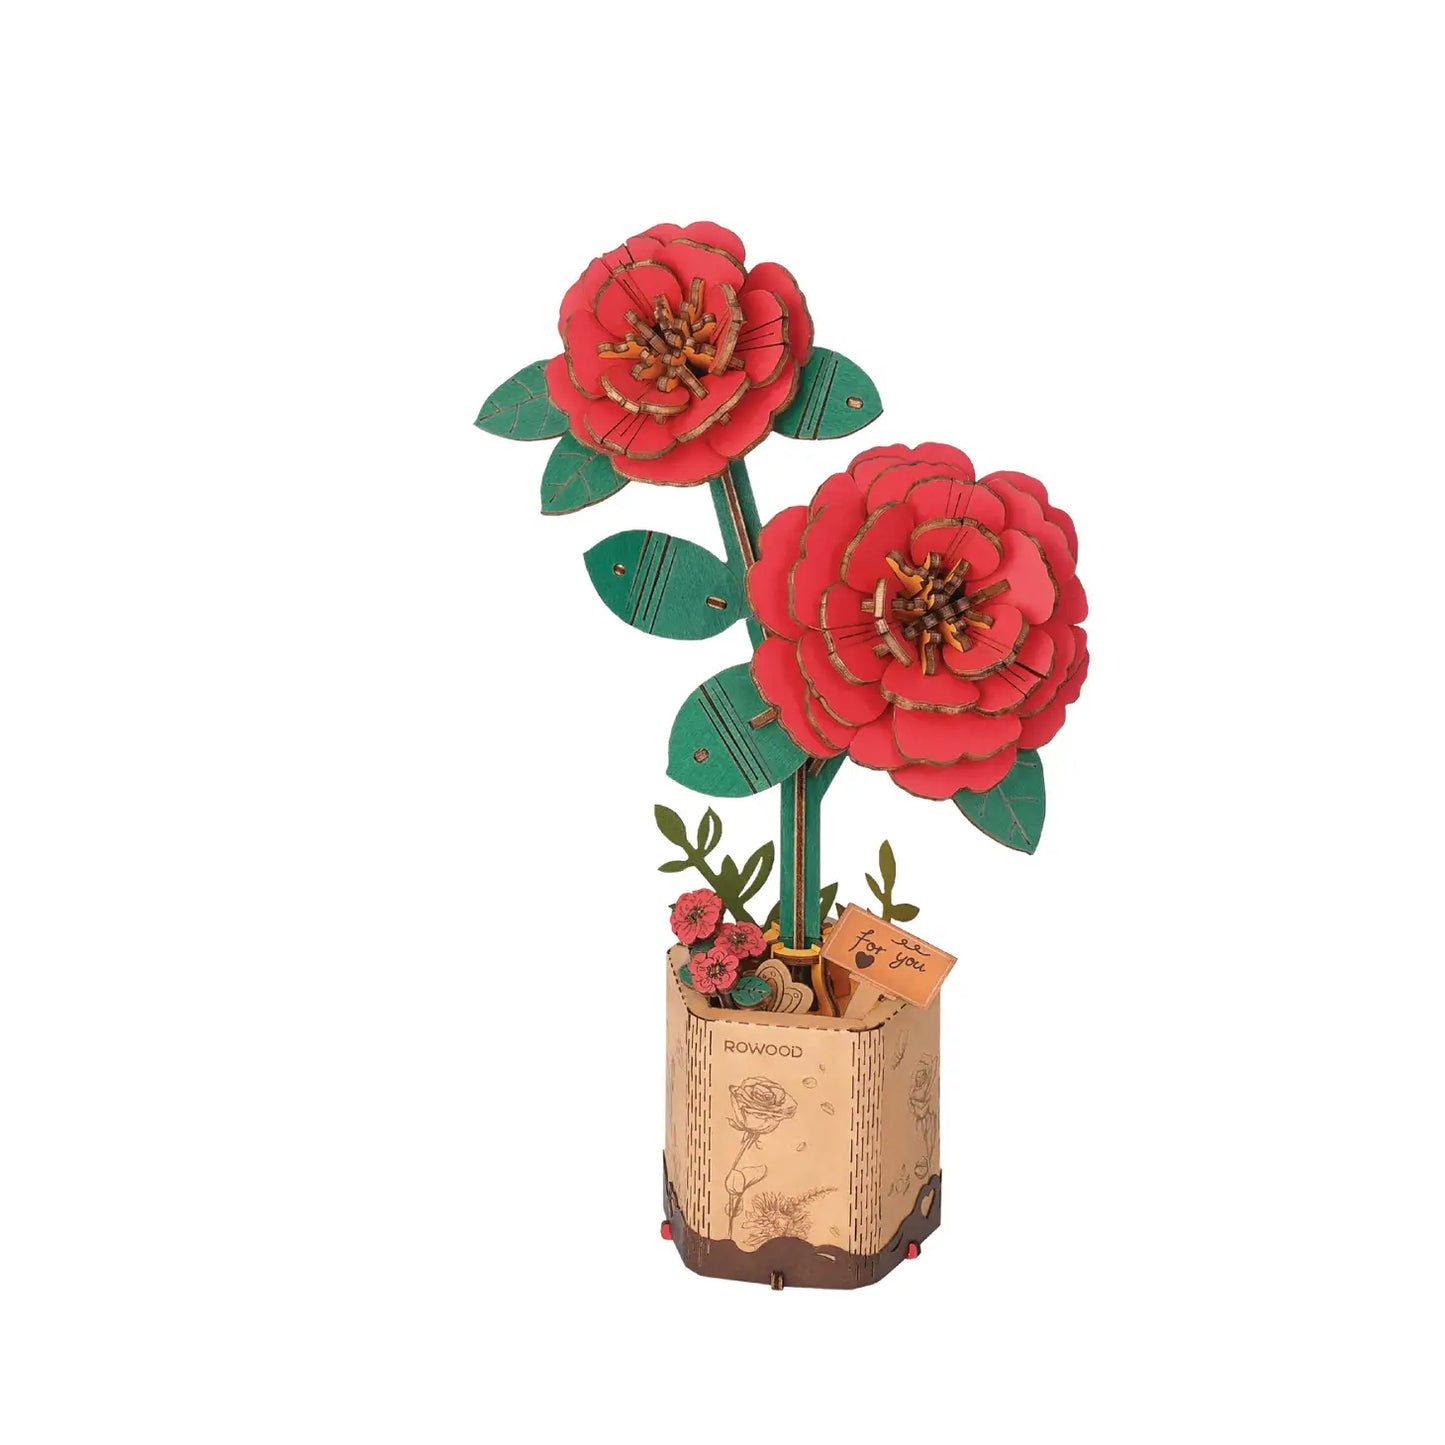 3D Wooden Flower Puzzle